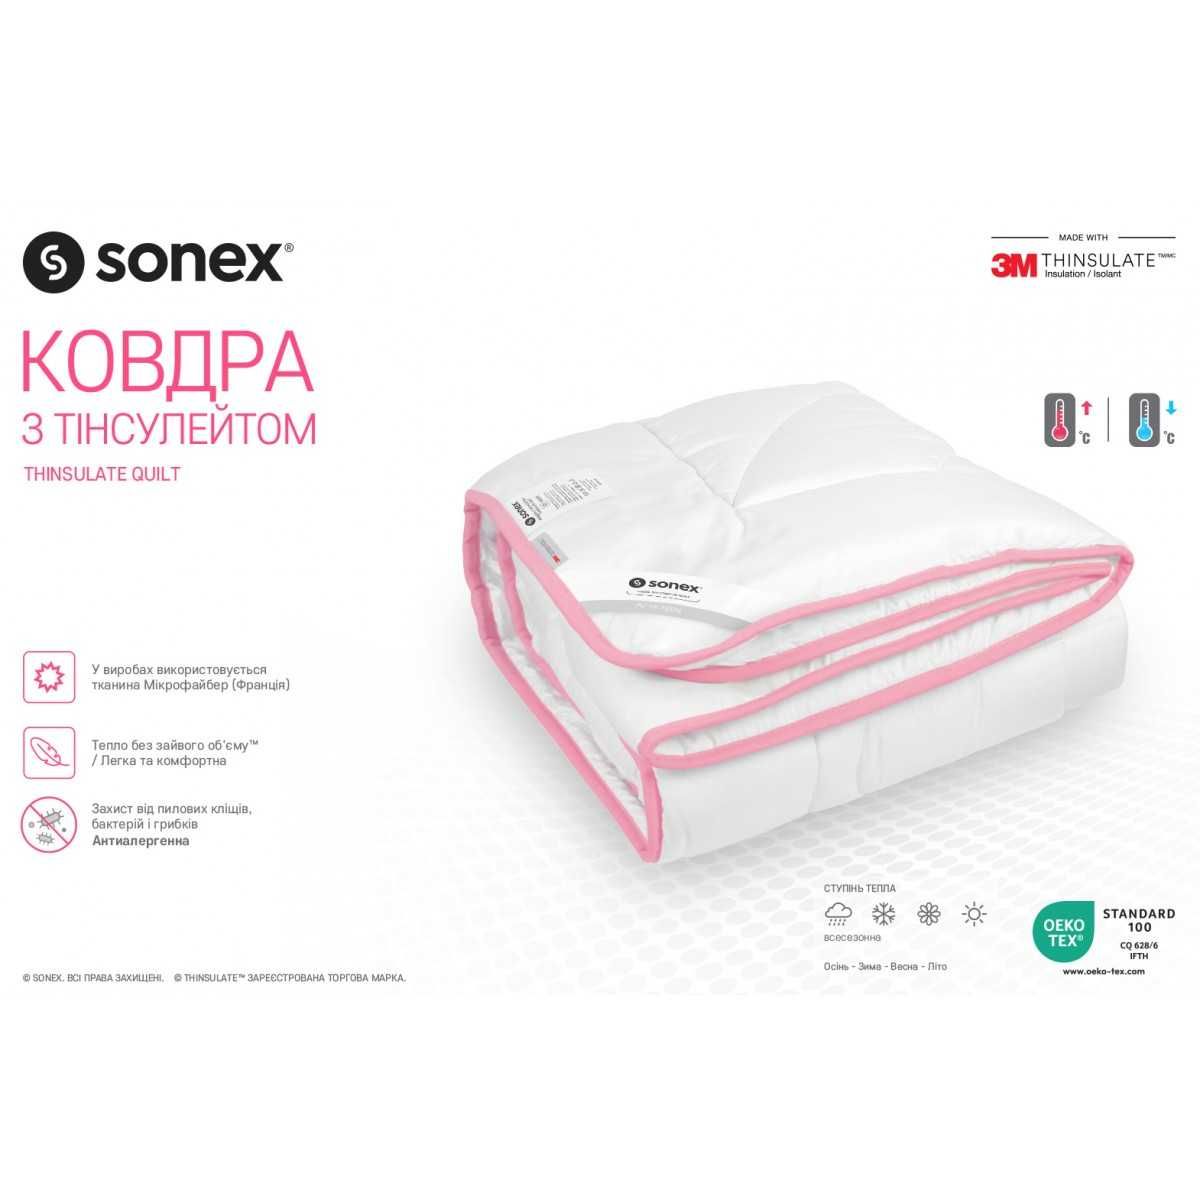 Ковдра Одеяло Sonex 155x215см з Тінсулейтом (3M™ Thinsulate™)